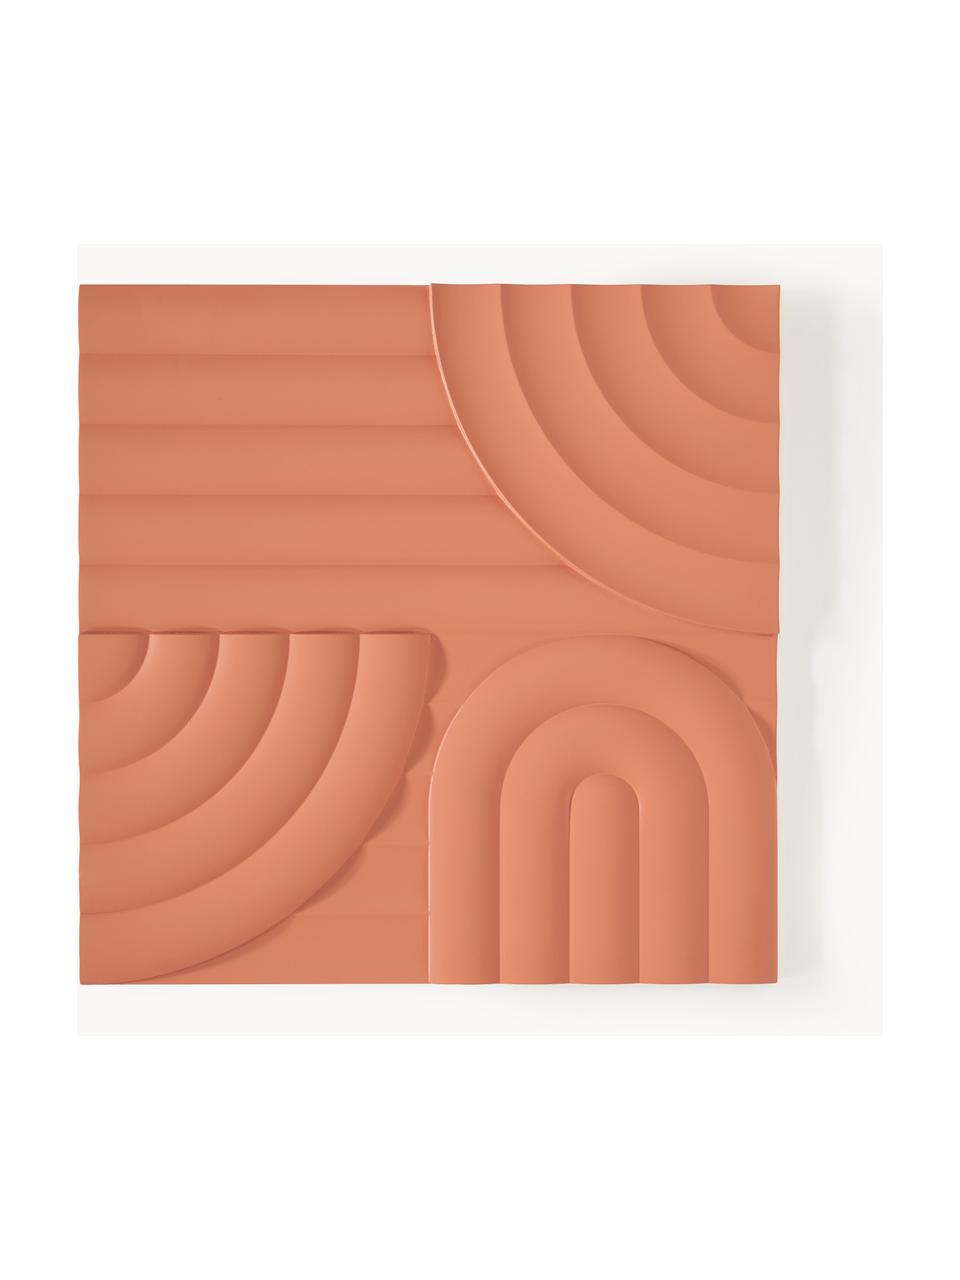 Nástěnná dekorace Massimo, MDF deska (dřevovláknitá deska střední hustoty), Terakotová, Š 80 cm, V 80 cm